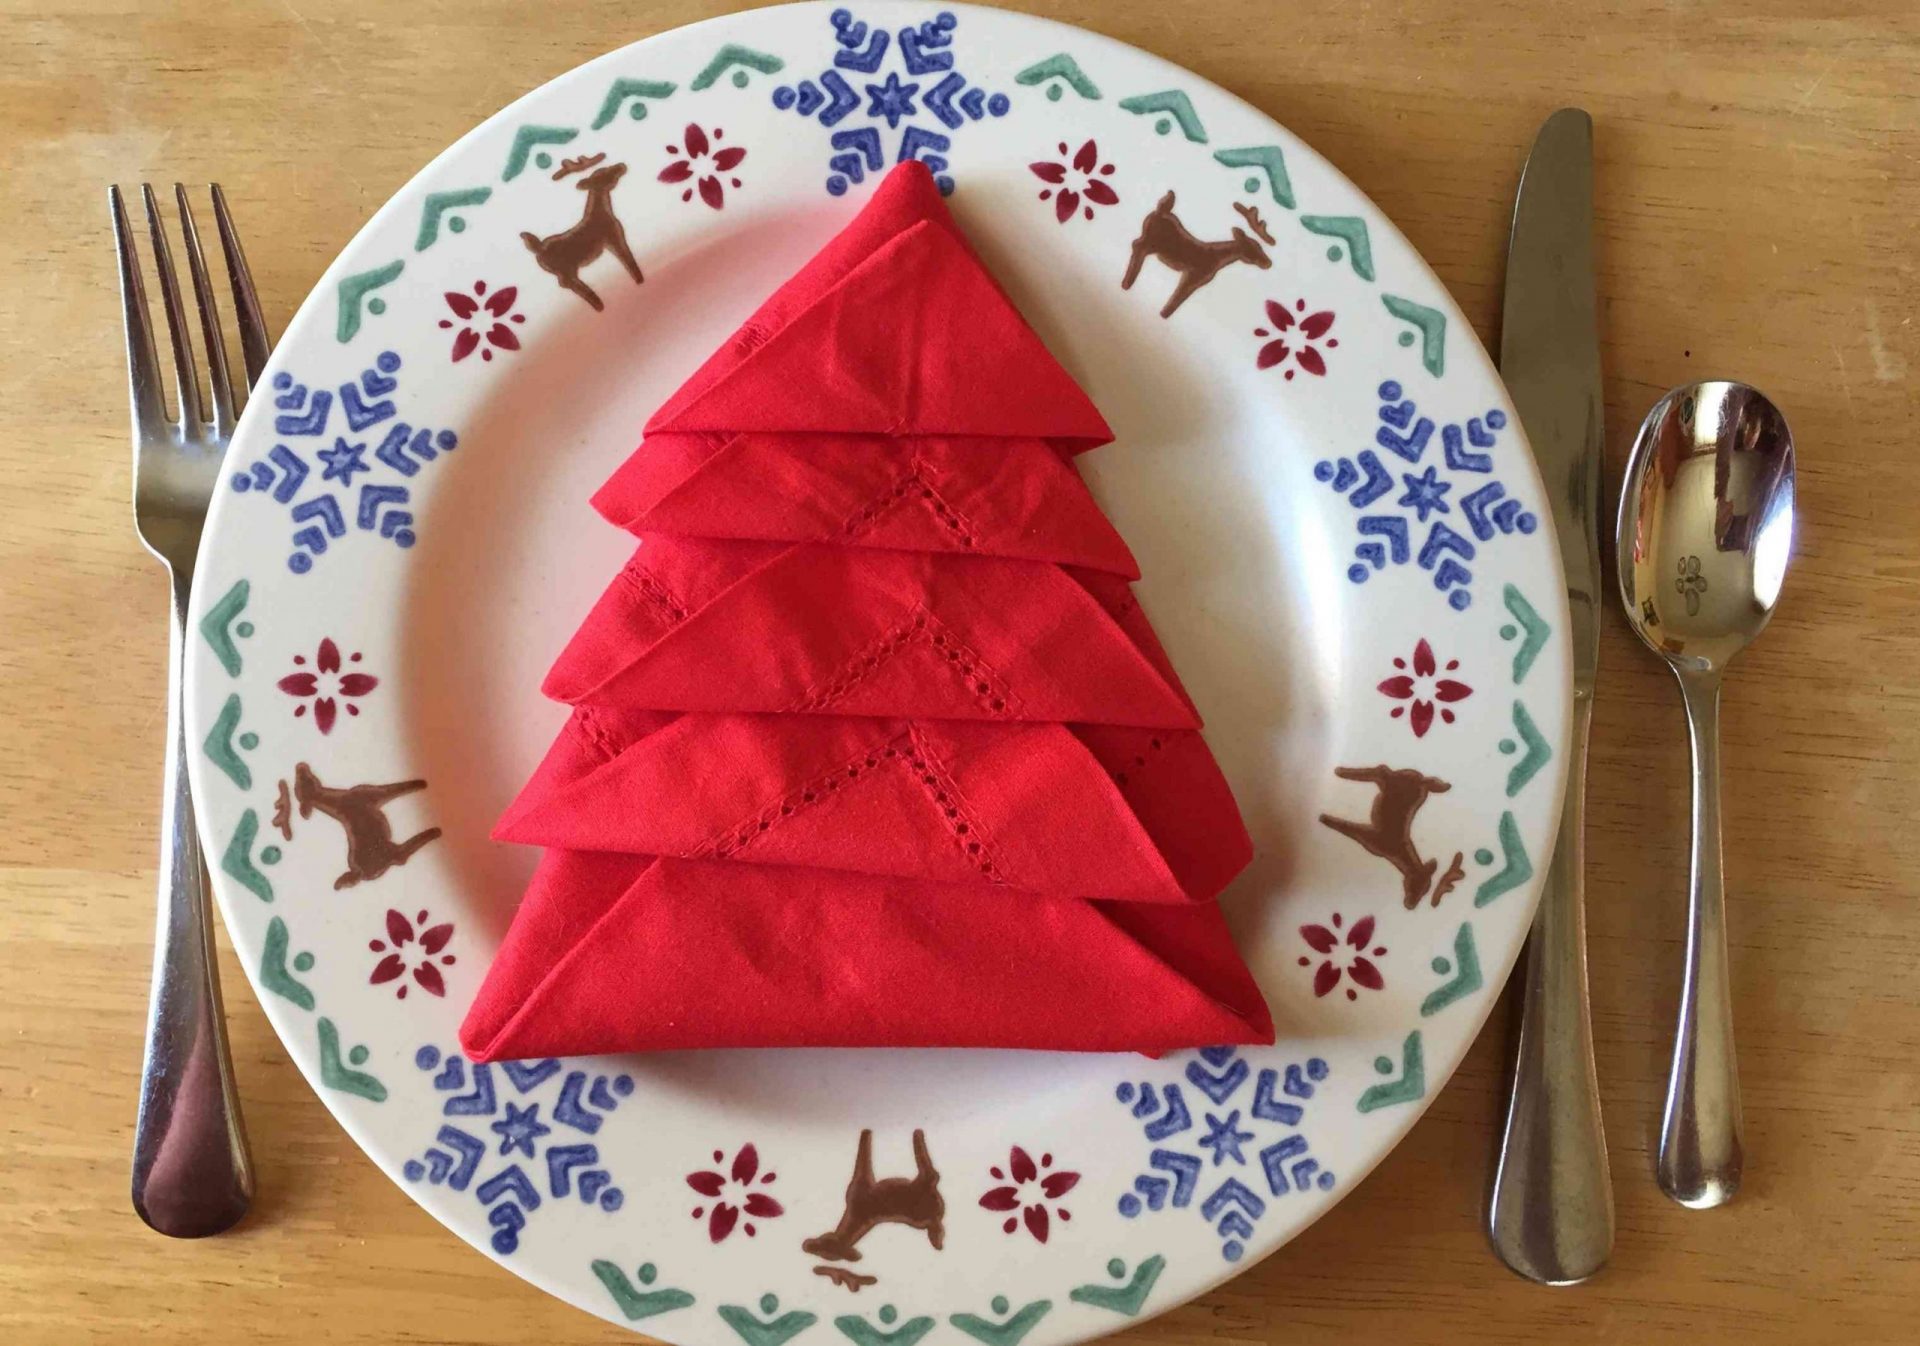 servilleta roja doblada en forma de árbol de Navidad sobre plato de renos